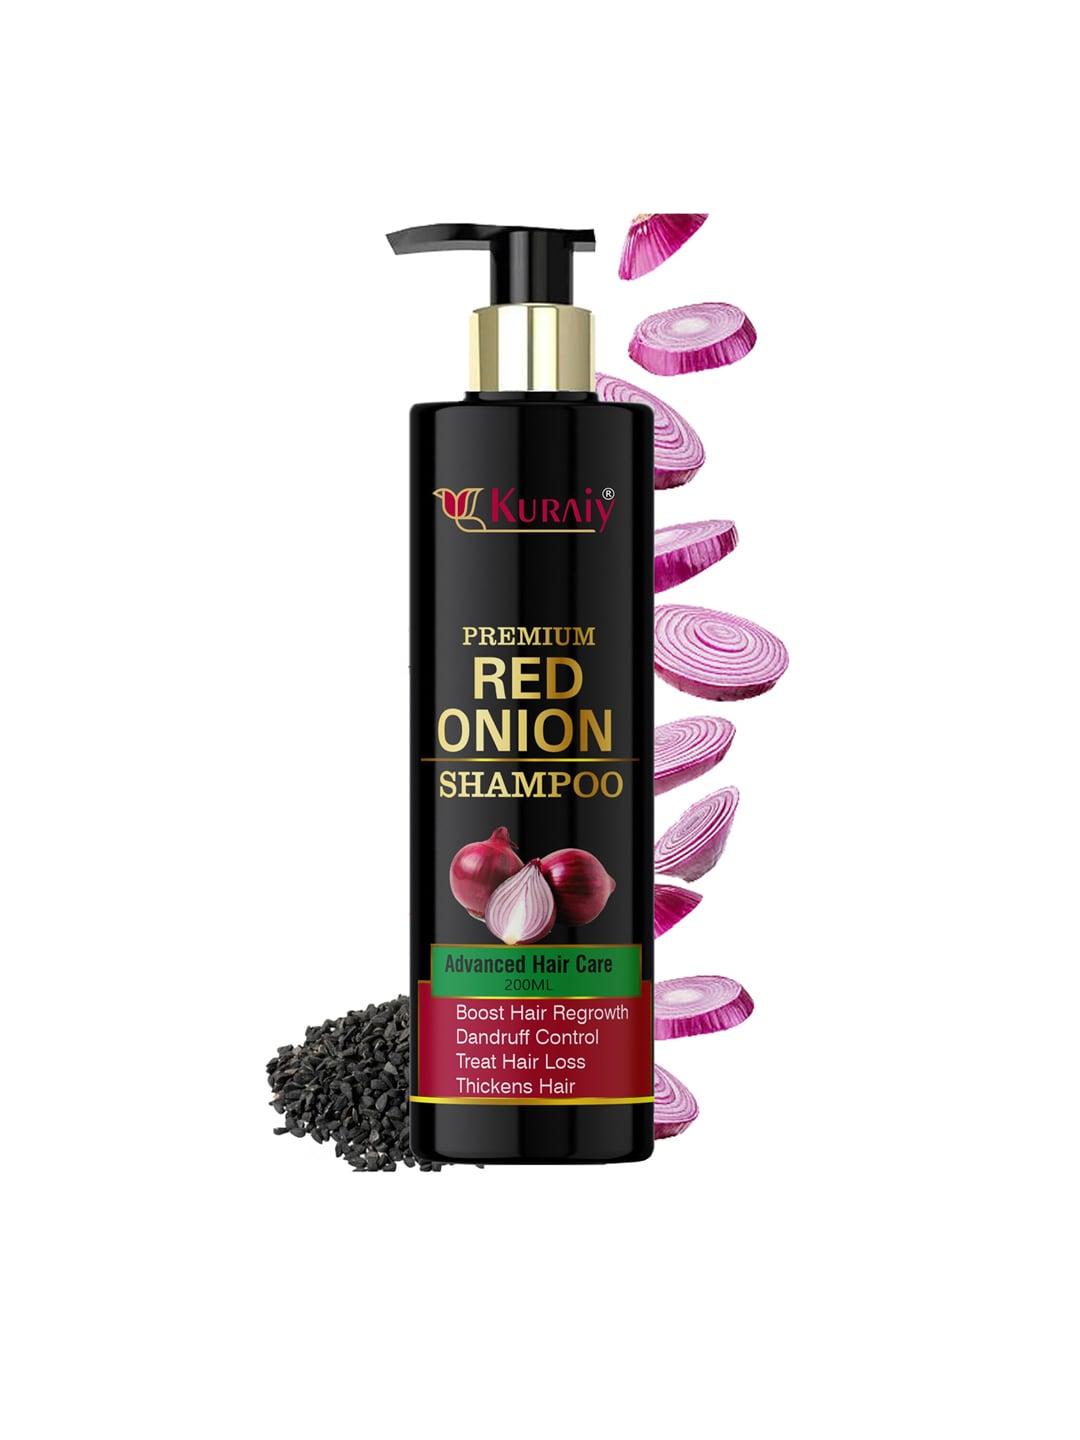 KURAIY Premium Red Onion Shampoo for Hair Growth & Hair Fall Control - 200ml